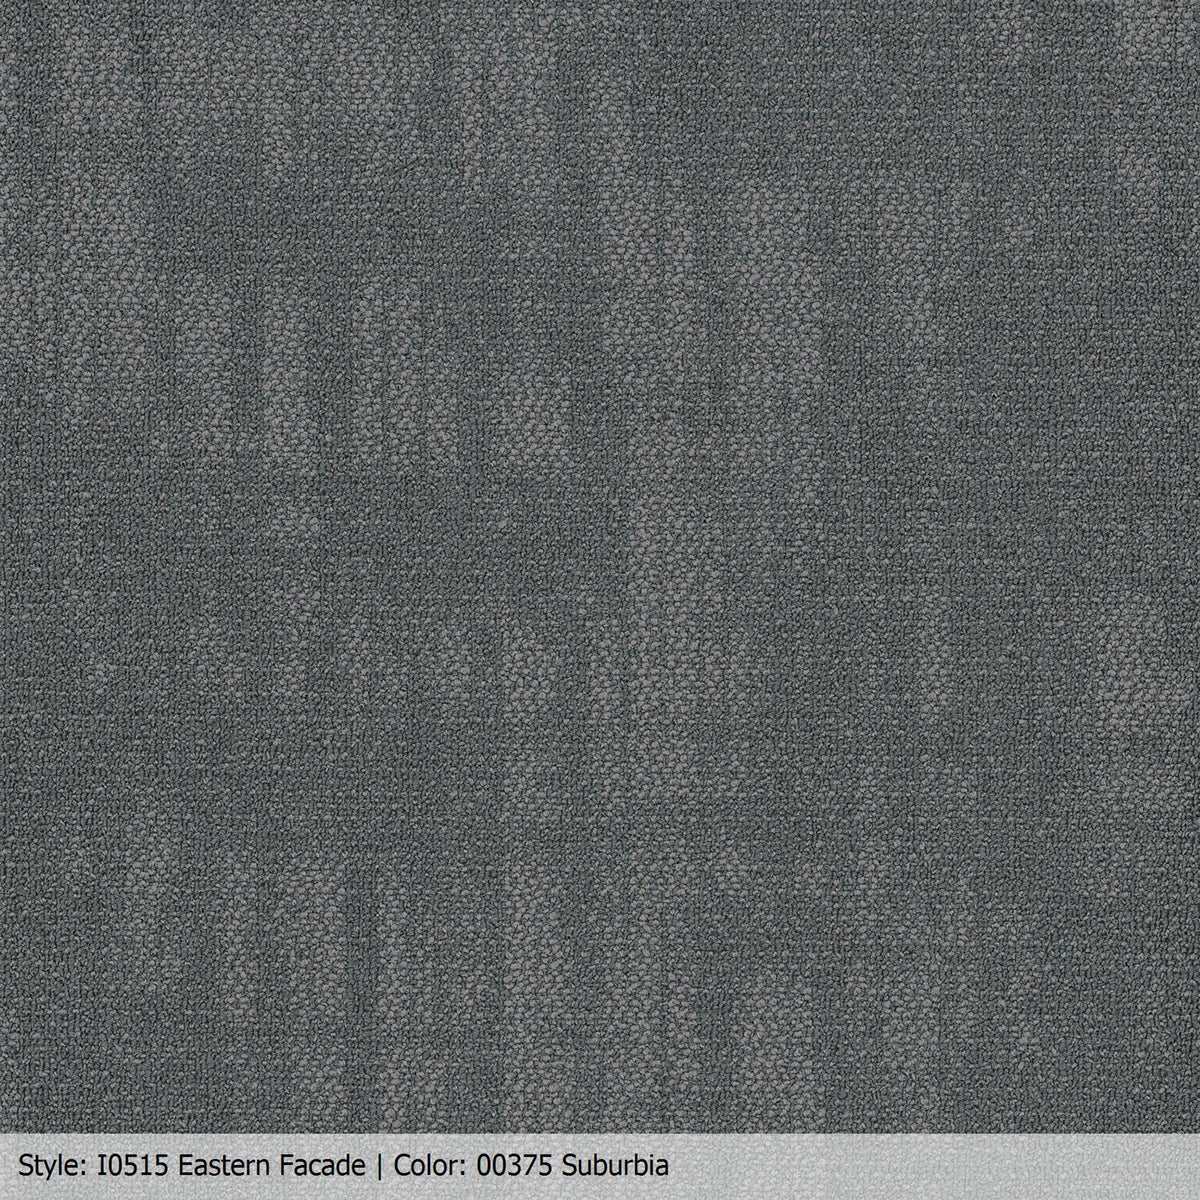 Patcraft - Urban Relief Collection - Eastern Facade Carpet Tile - Suburbia 00375